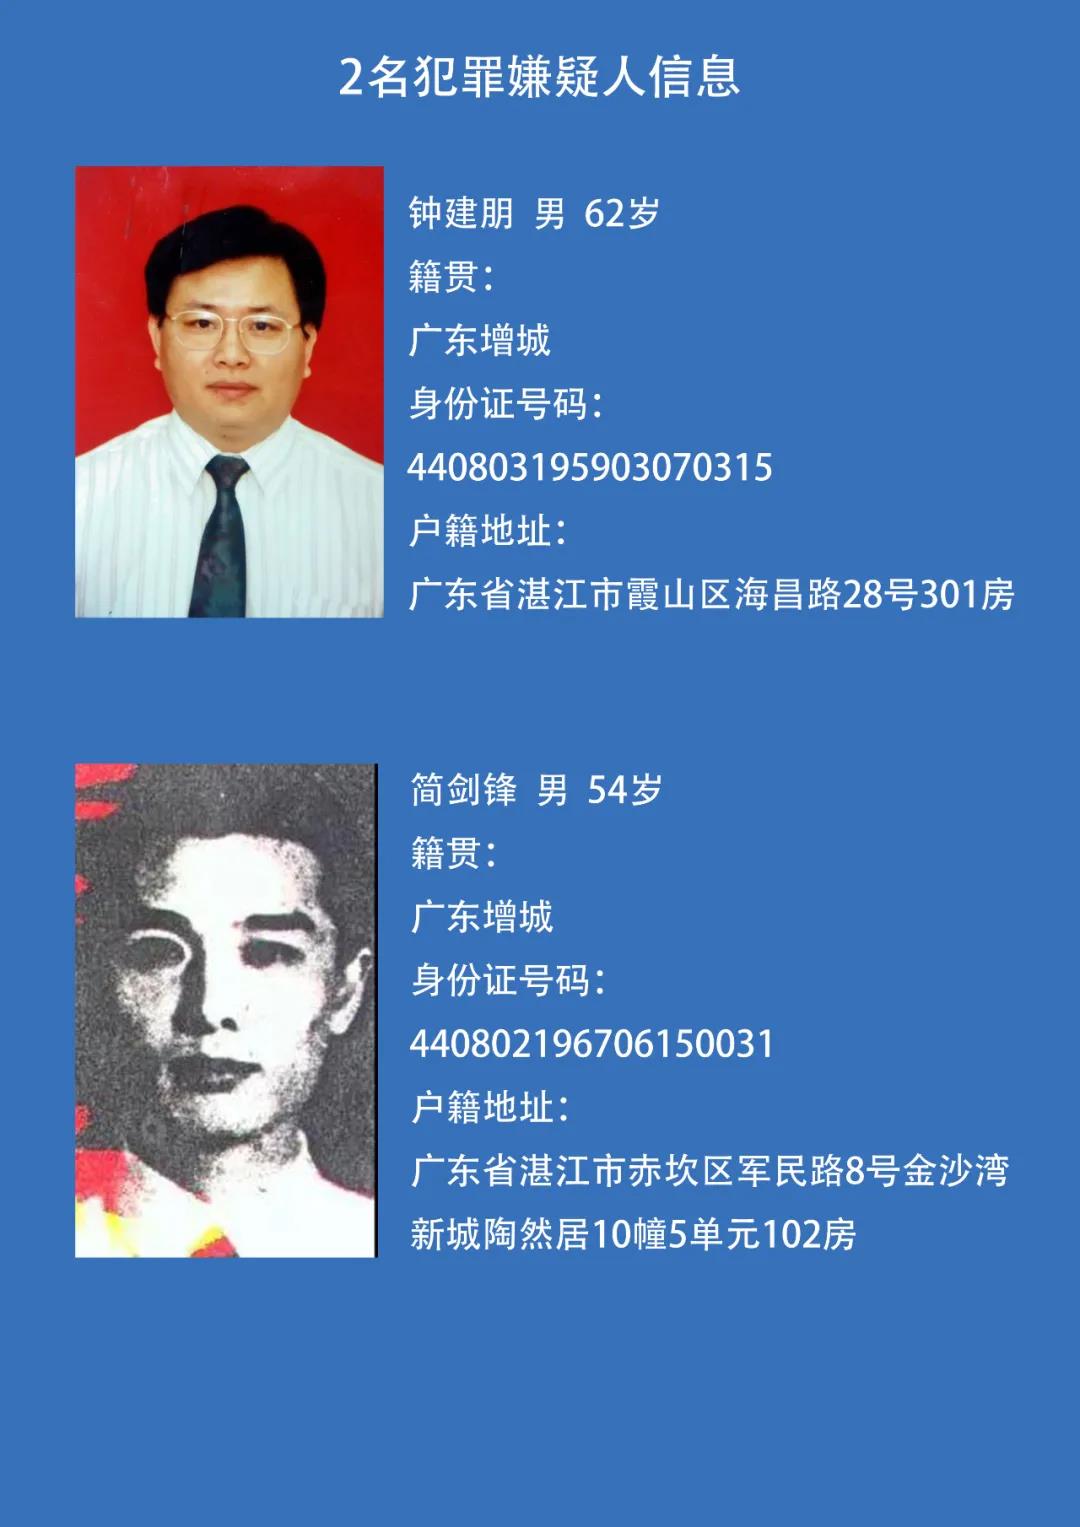 湛江警方最高悬赏8万通缉2名在逃嫌疑人!年龄最大者62岁